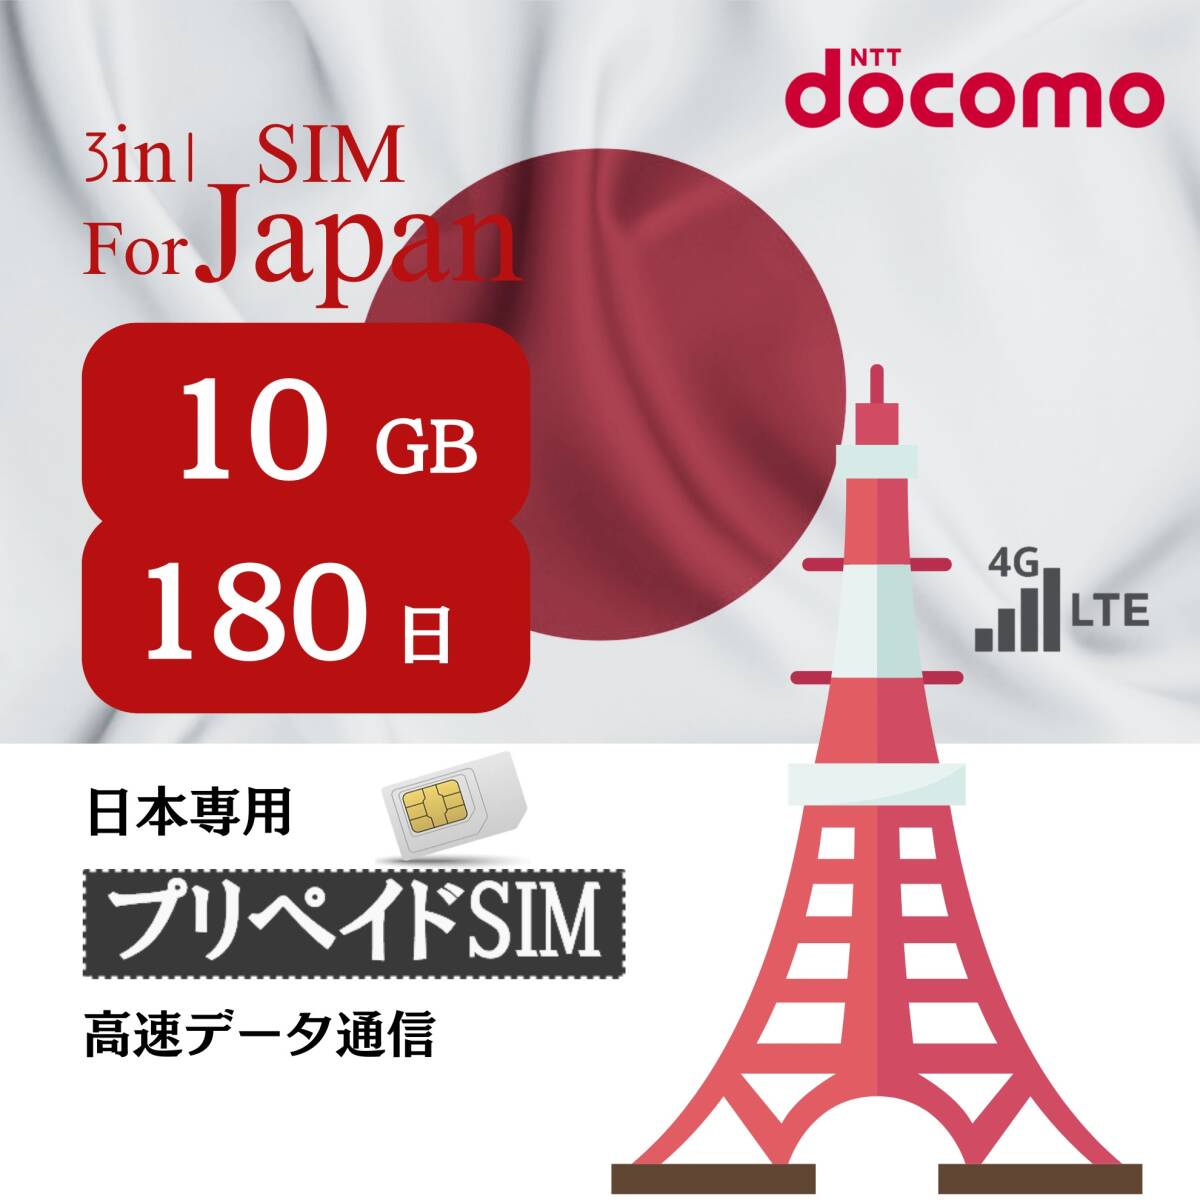 SIM for Japan 日本国内用 180日間 10GB (標準/マイクロ/ナノ)3-in-1 docomo データ通信専用 4G-LTE SIMカード/NTTドコモ 通信網_画像1